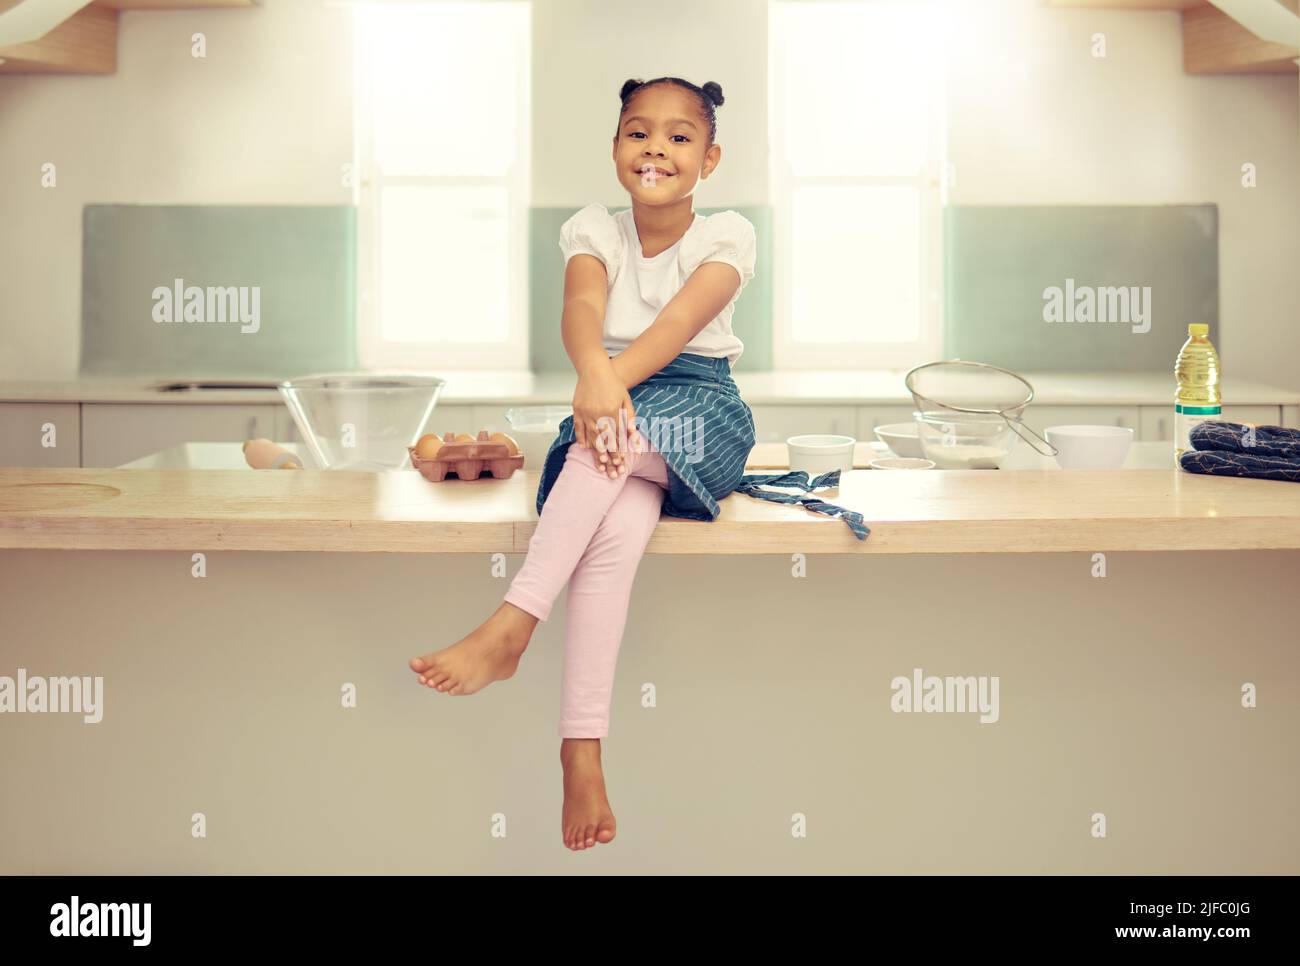 Porträt eines niedlichen jungen Mixed-Race-Mädchens, das mit einer Schürze auf der Küchentheke sitzt und lächelt. Kleine hispanische Mädchen lächelt und sitzt allein Stockfoto